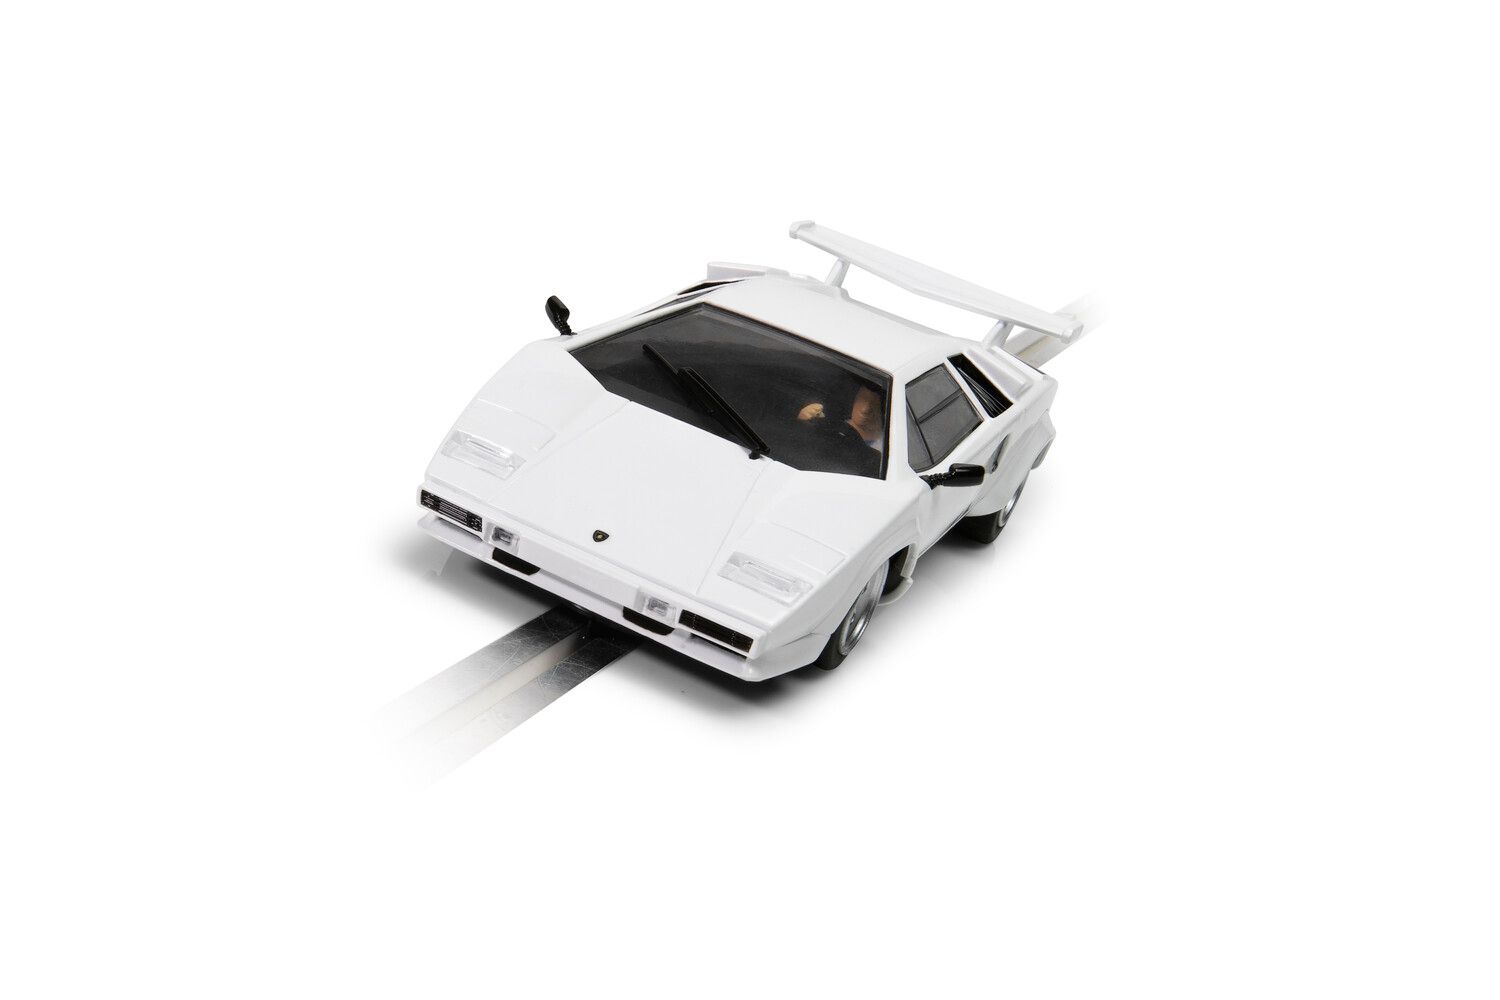 C4336 Lamborghini Countach White